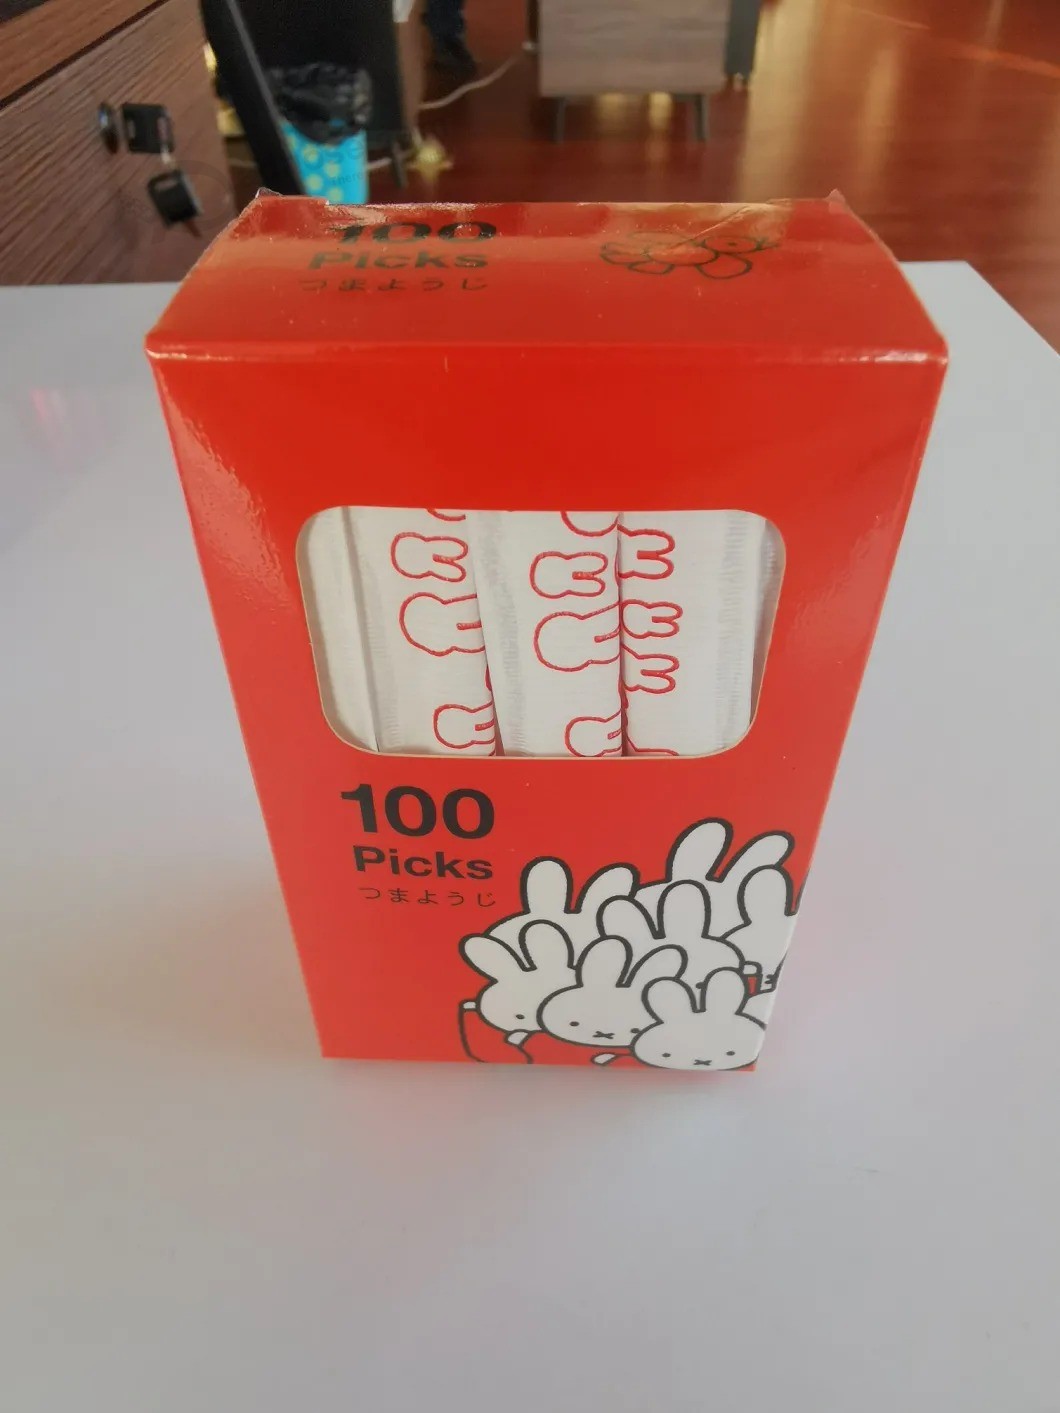 Hoge kwaliteit wegwerp bamboe tandenstoker in kartonnen doos